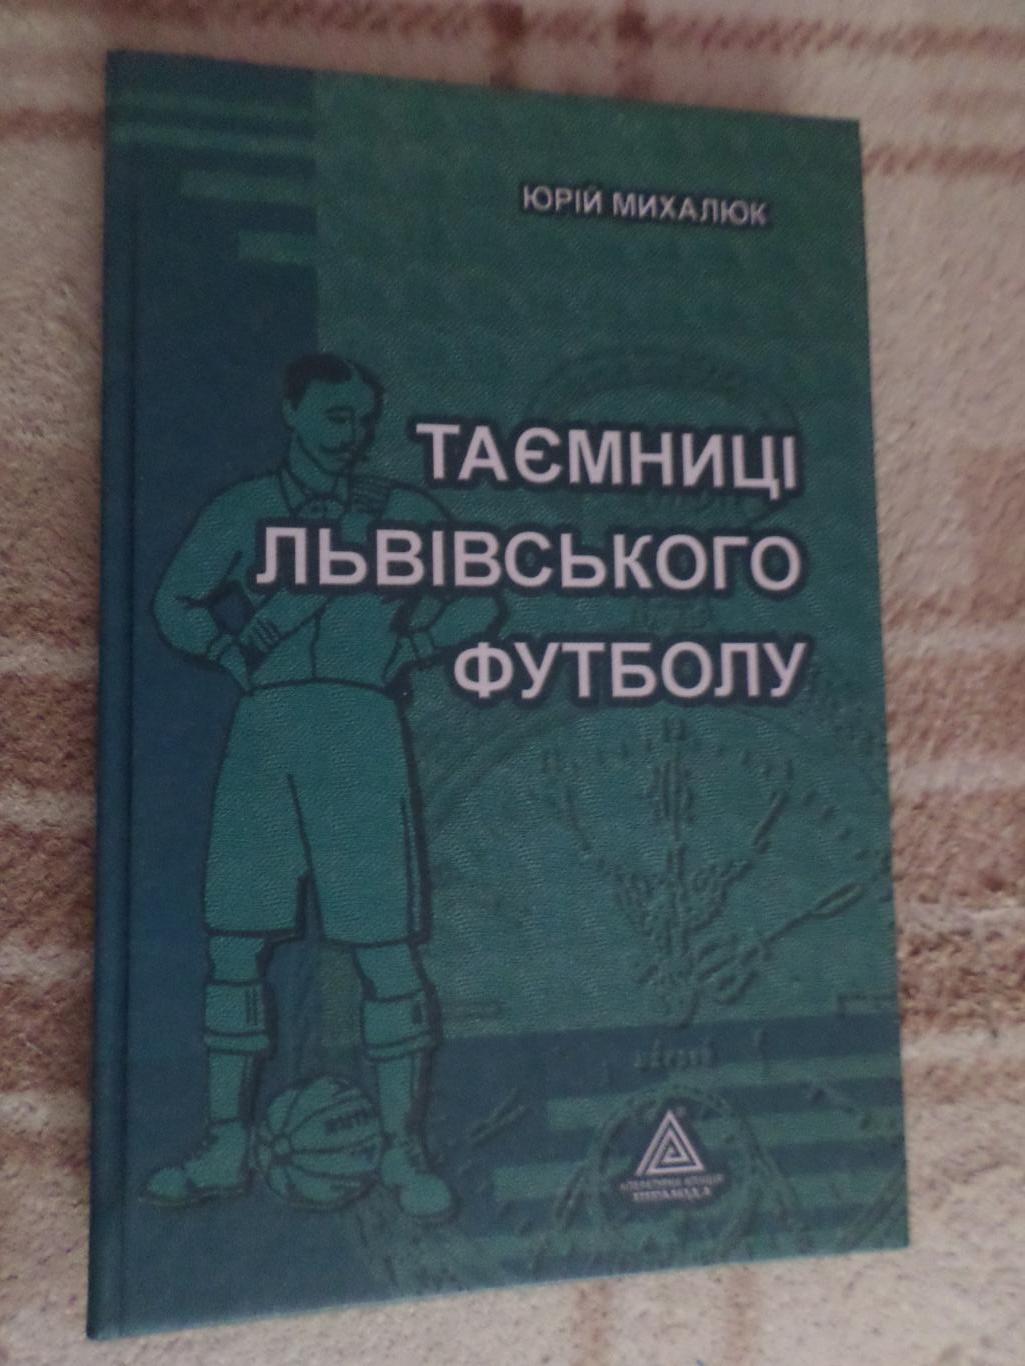 Михалюк - Таємниці львівського футболу 2004 г книга 1-я